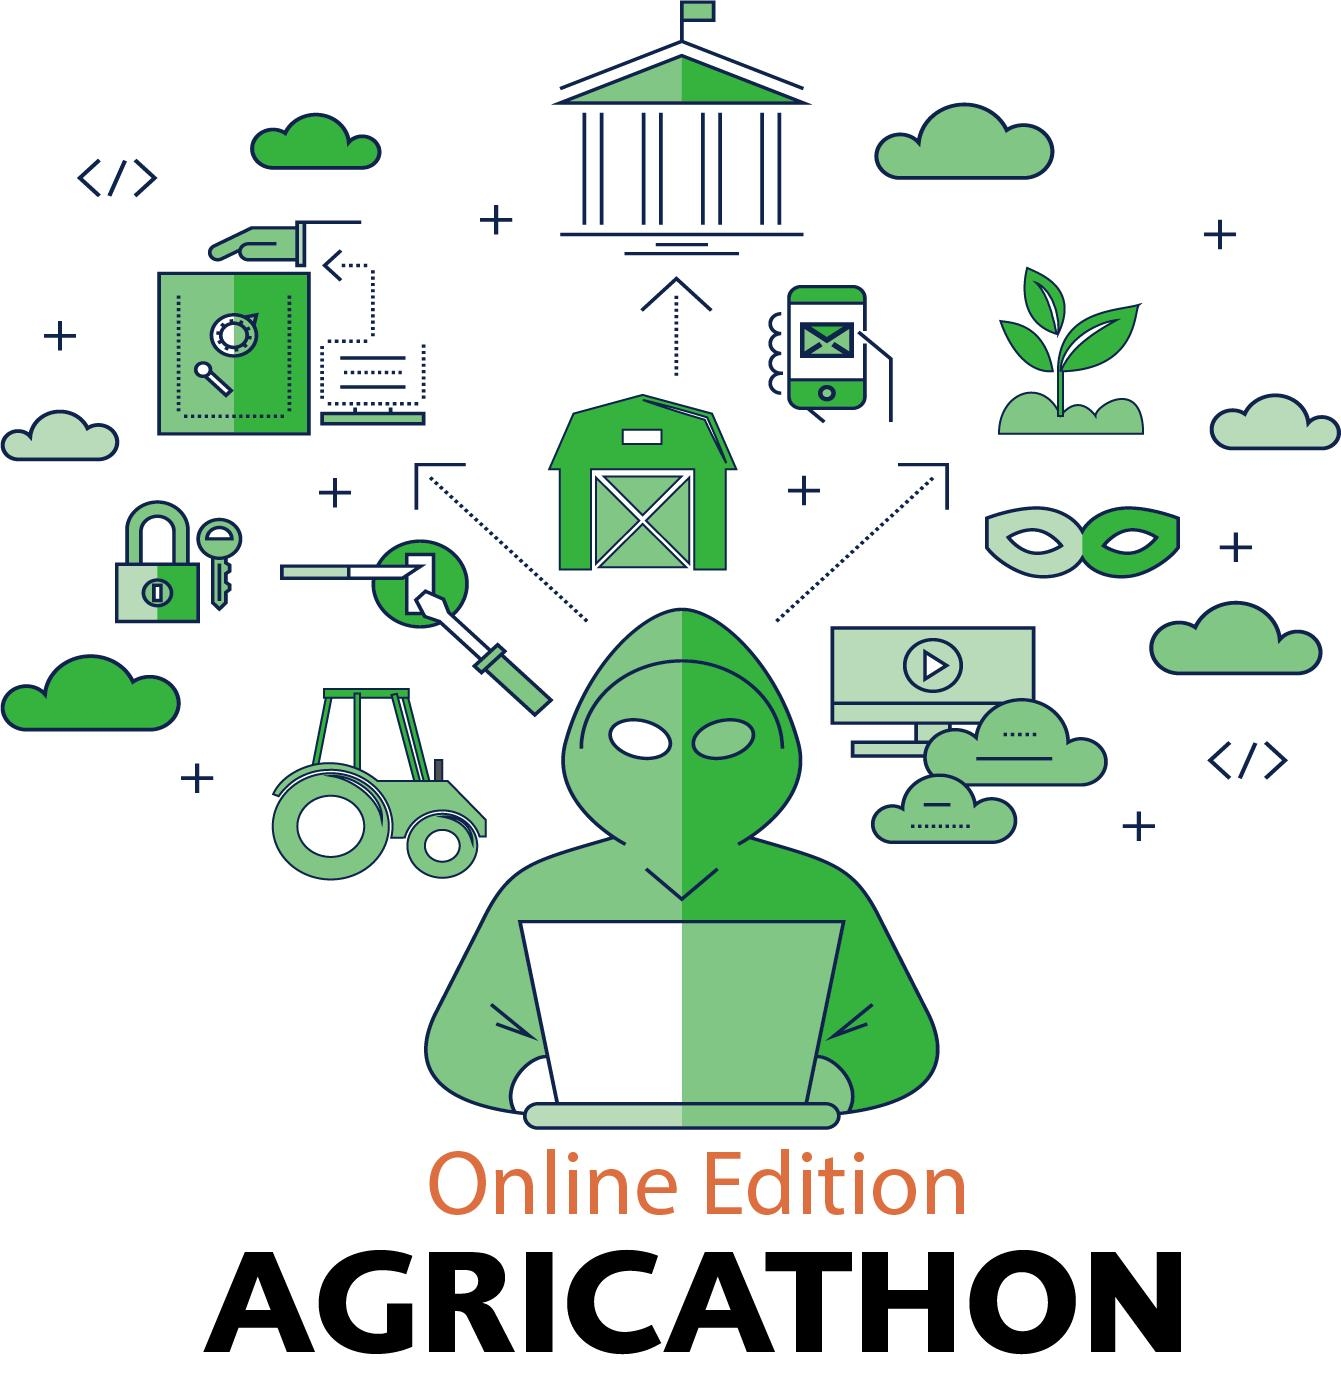 L'Agricathon 2021 était organisé par la HES-SO Valais-Wallis et AGRIDEA.